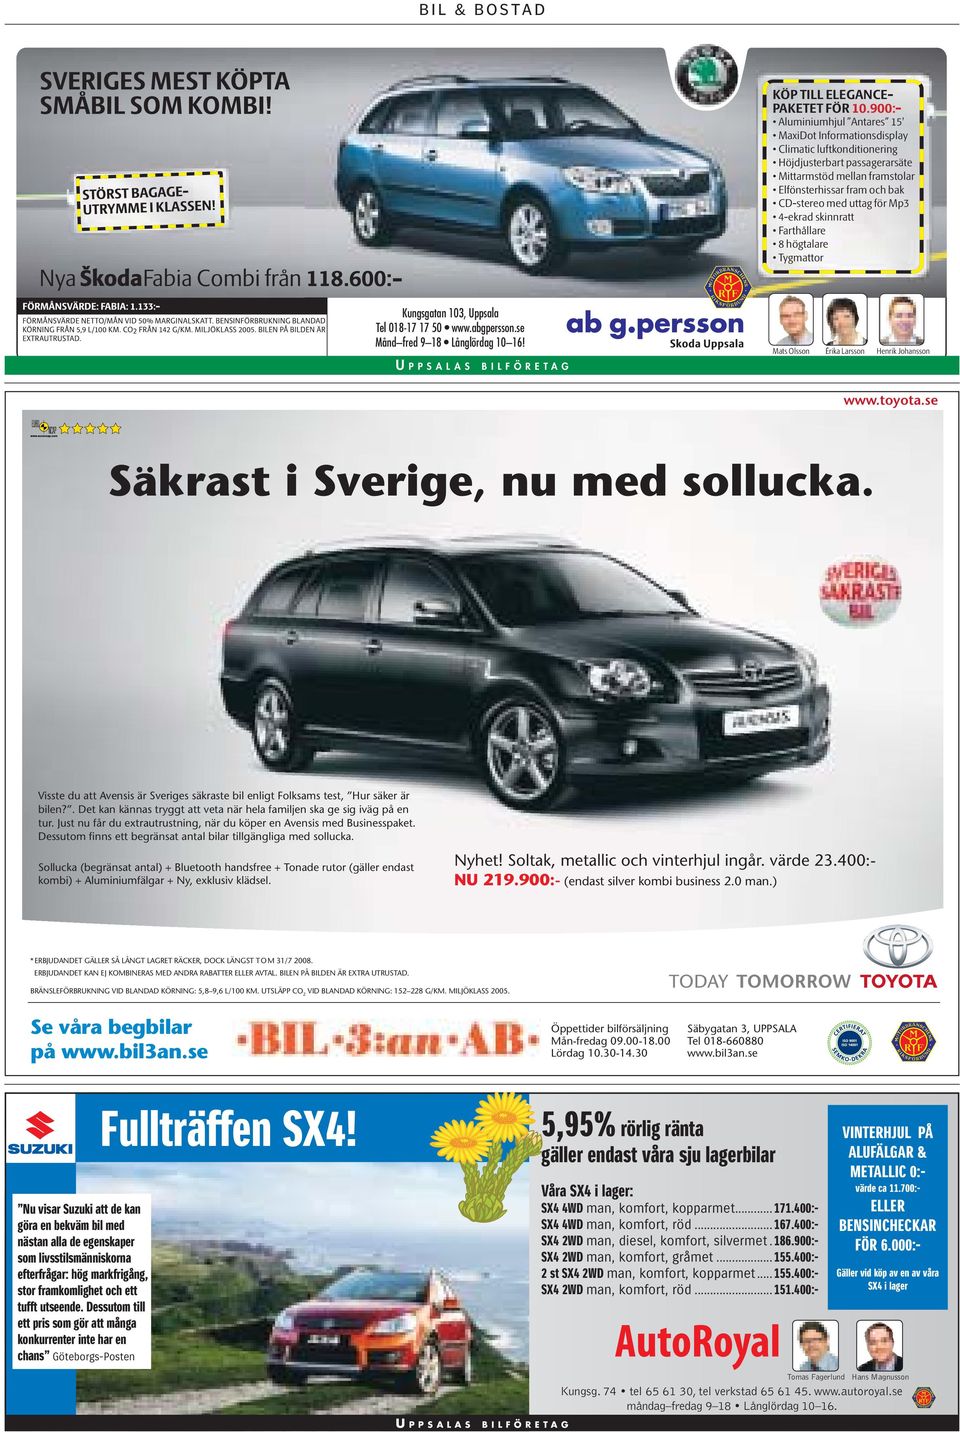 Visste du att Avensis är Sveriges säkraste bil enligt Folksams test, Hur säker är bilen?. Det kan kännas tryggt att veta när hela familjen ska ge sig iväg på en tur.